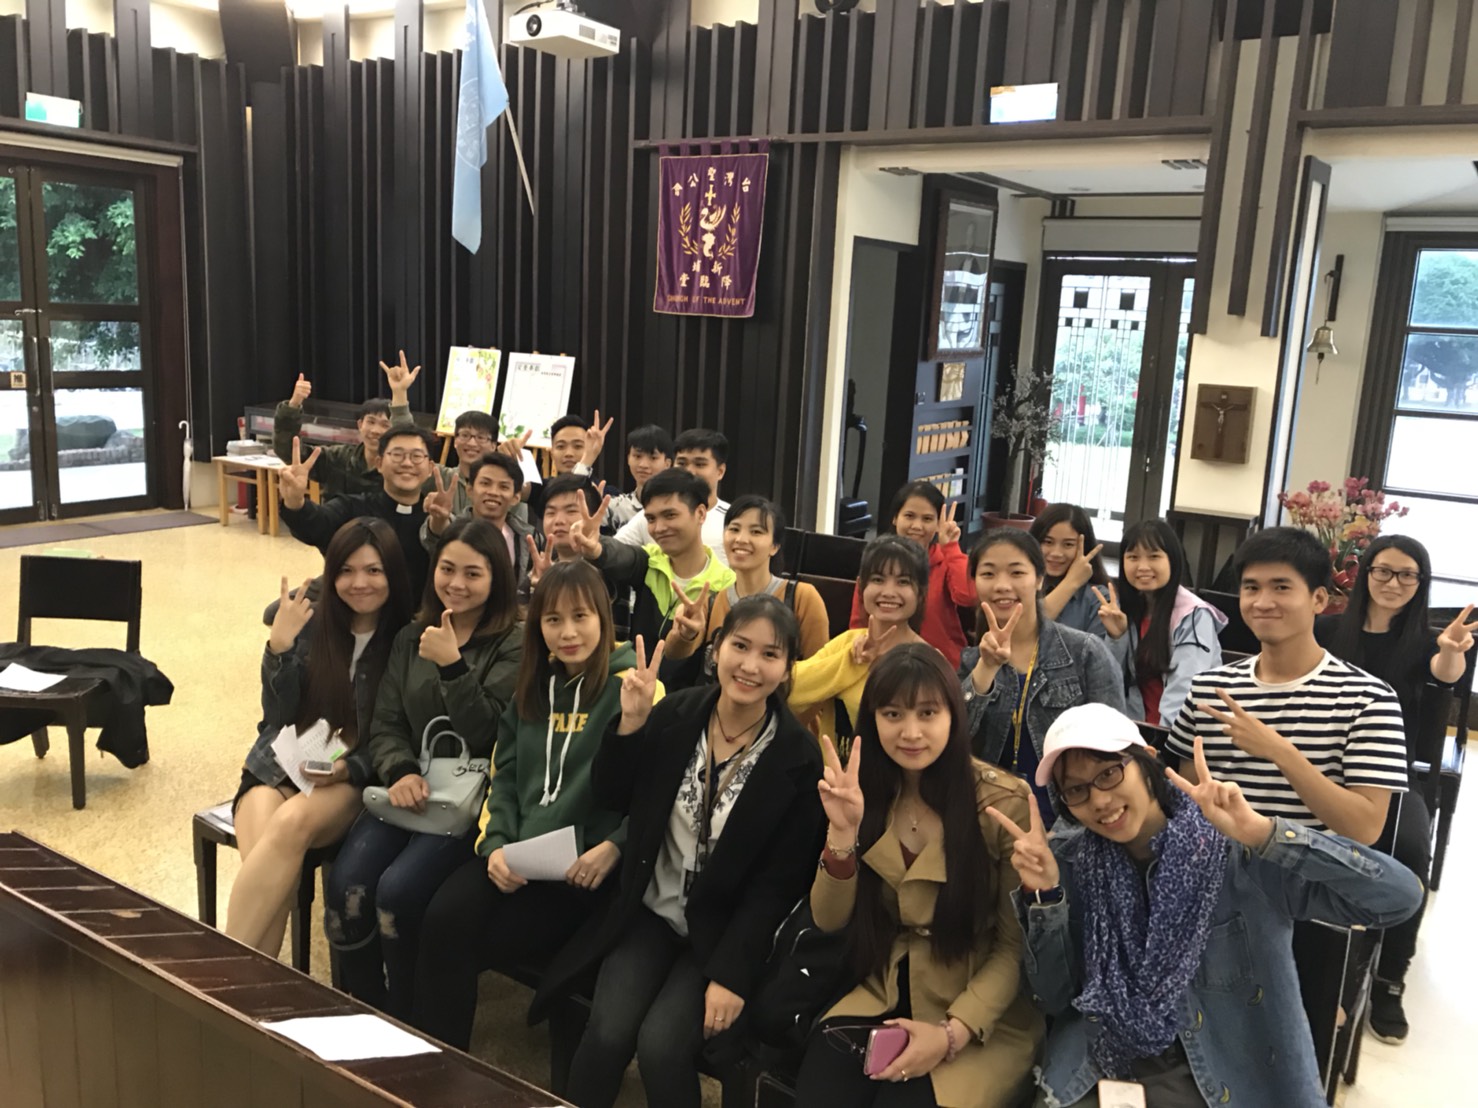 聖約翰科技大學校牧室安排團契學生為越南同學舉辦一週兩次小班制的「輕鬆學中文」語言學習時光